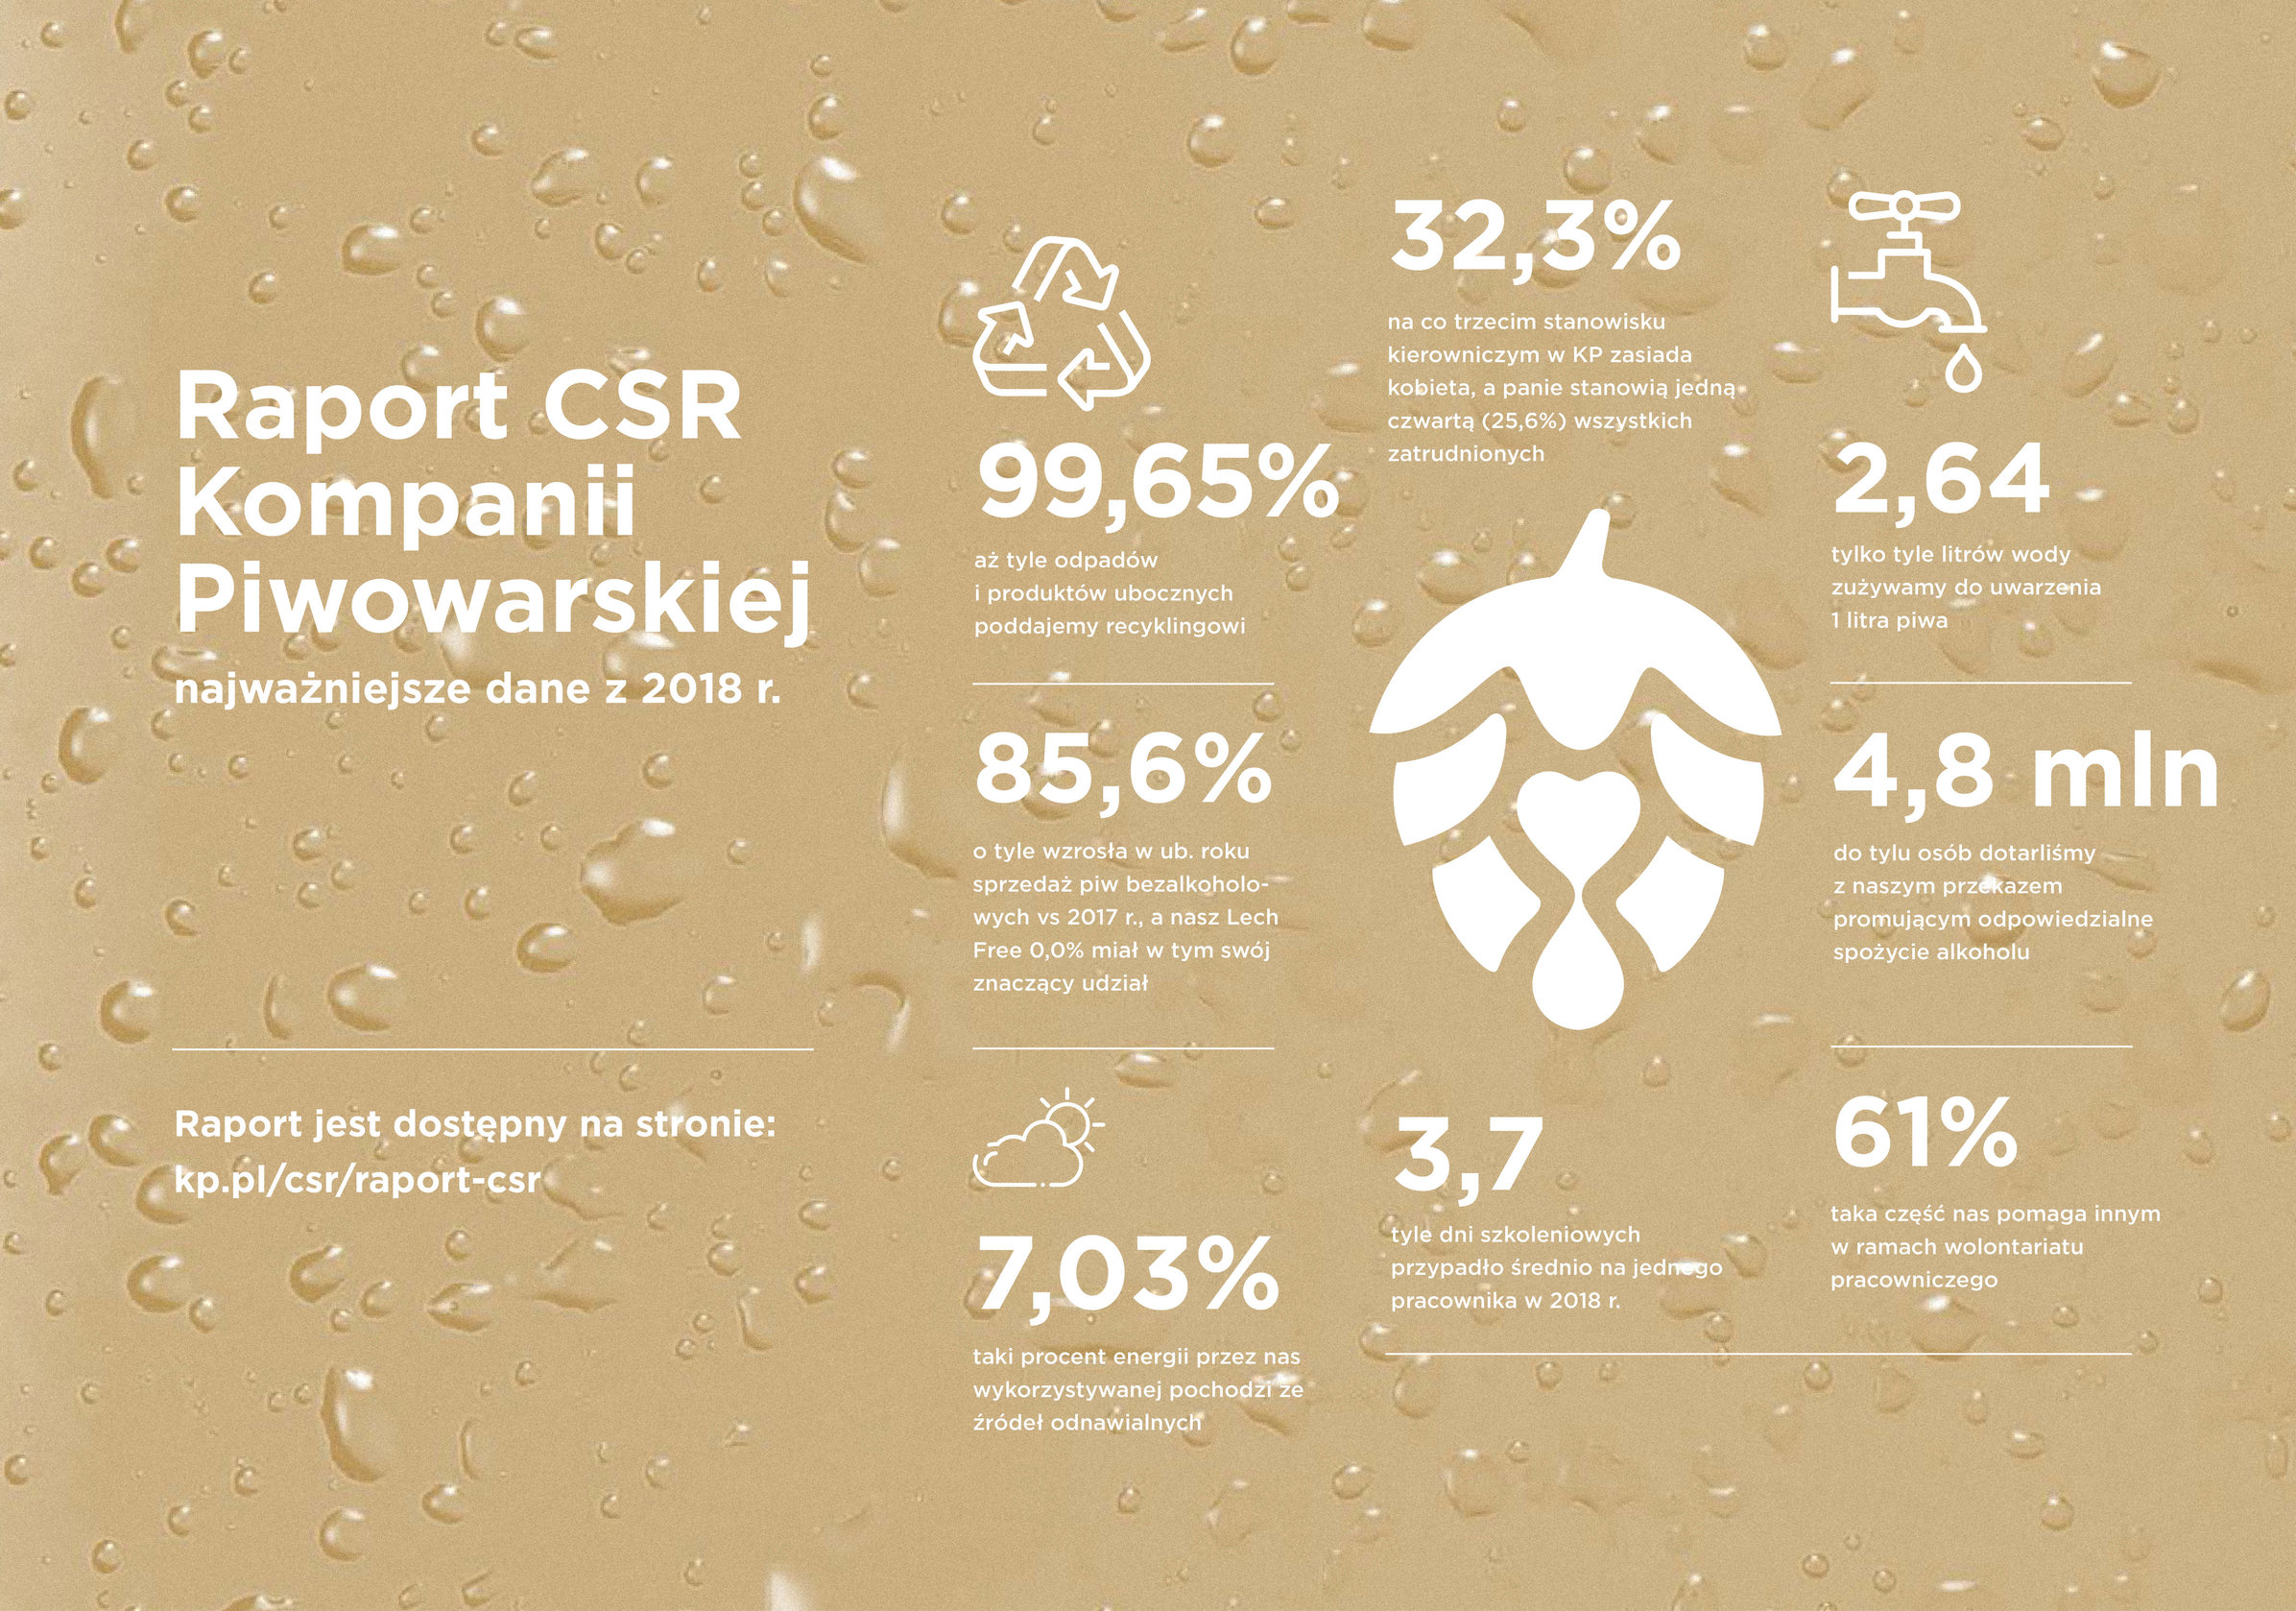 Odpowiedzialna konsumpcja, społeczeństwo  i minimalizacja wpływu na środowisko to priorytety! Nowy raport CSR Kompanii Piwowarskiej.